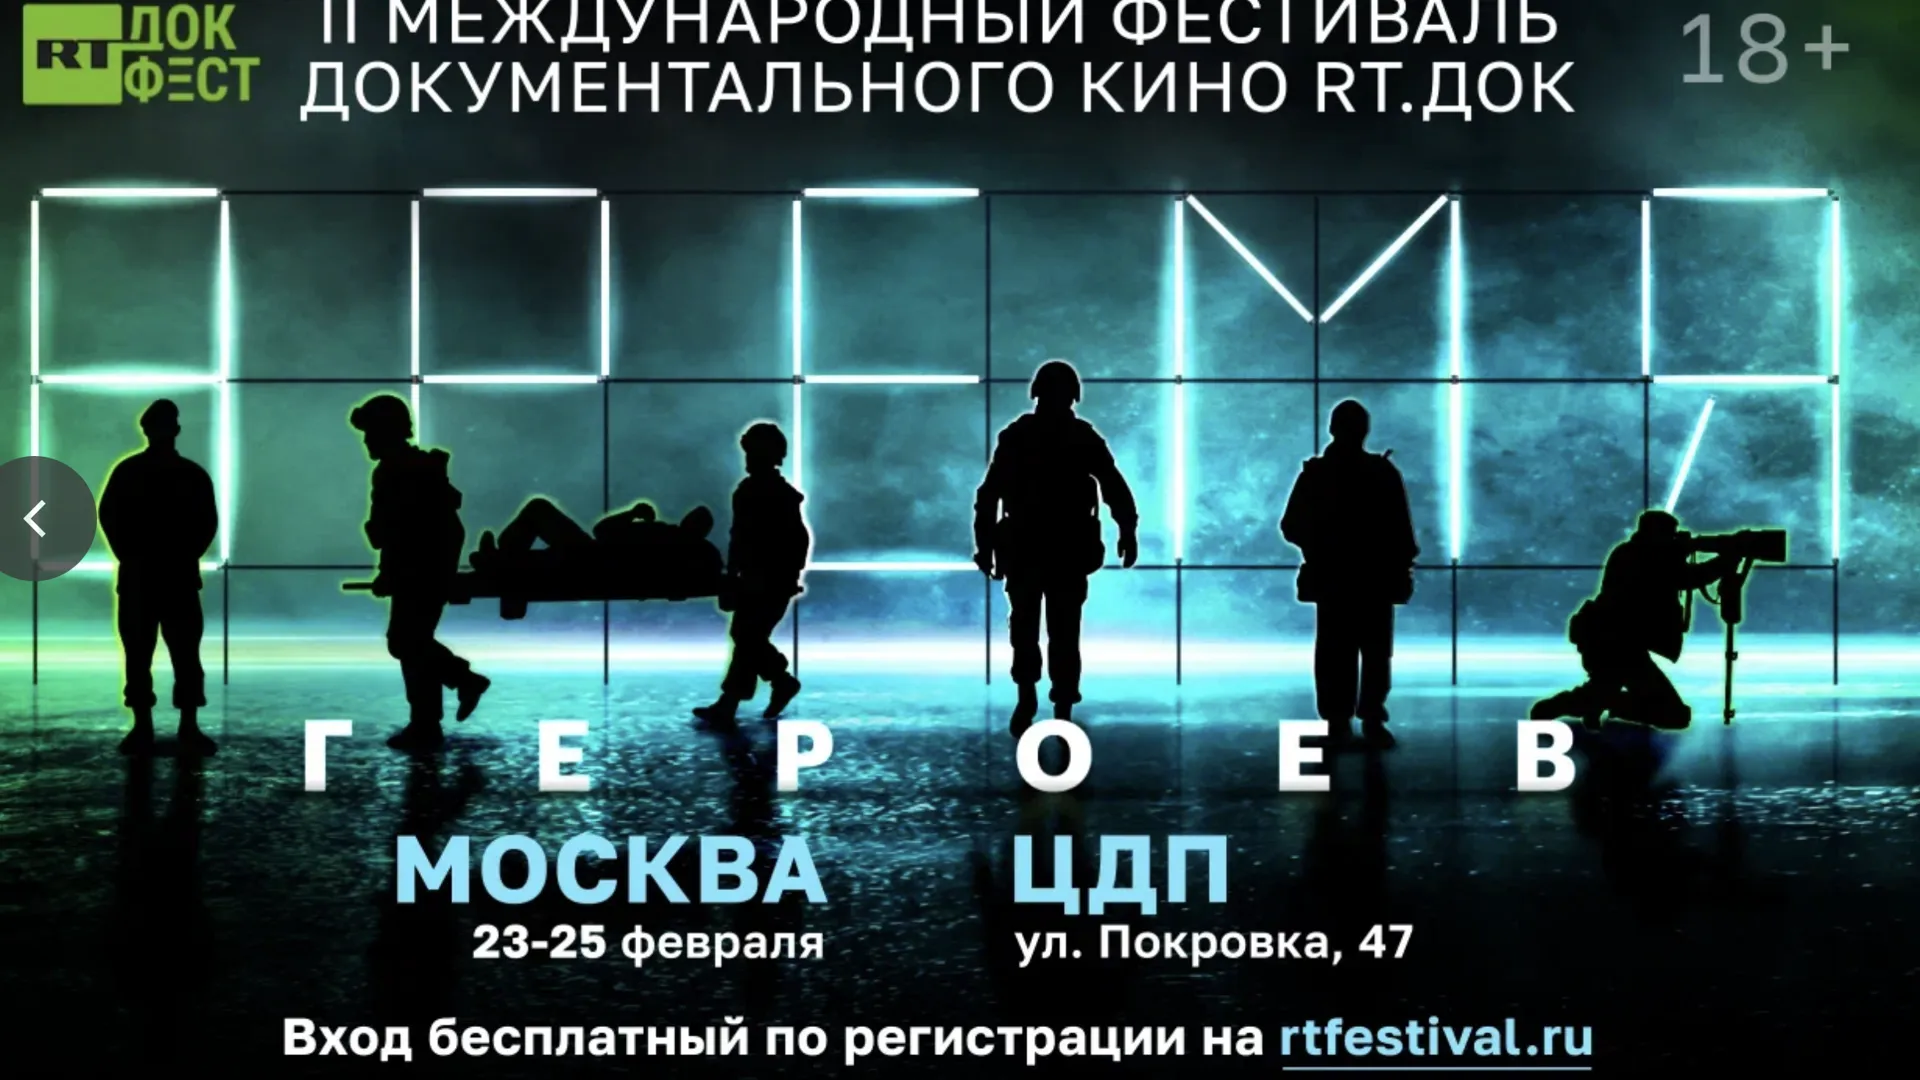 II Международный фестиваль документального кино «RT.Док. Время героев»